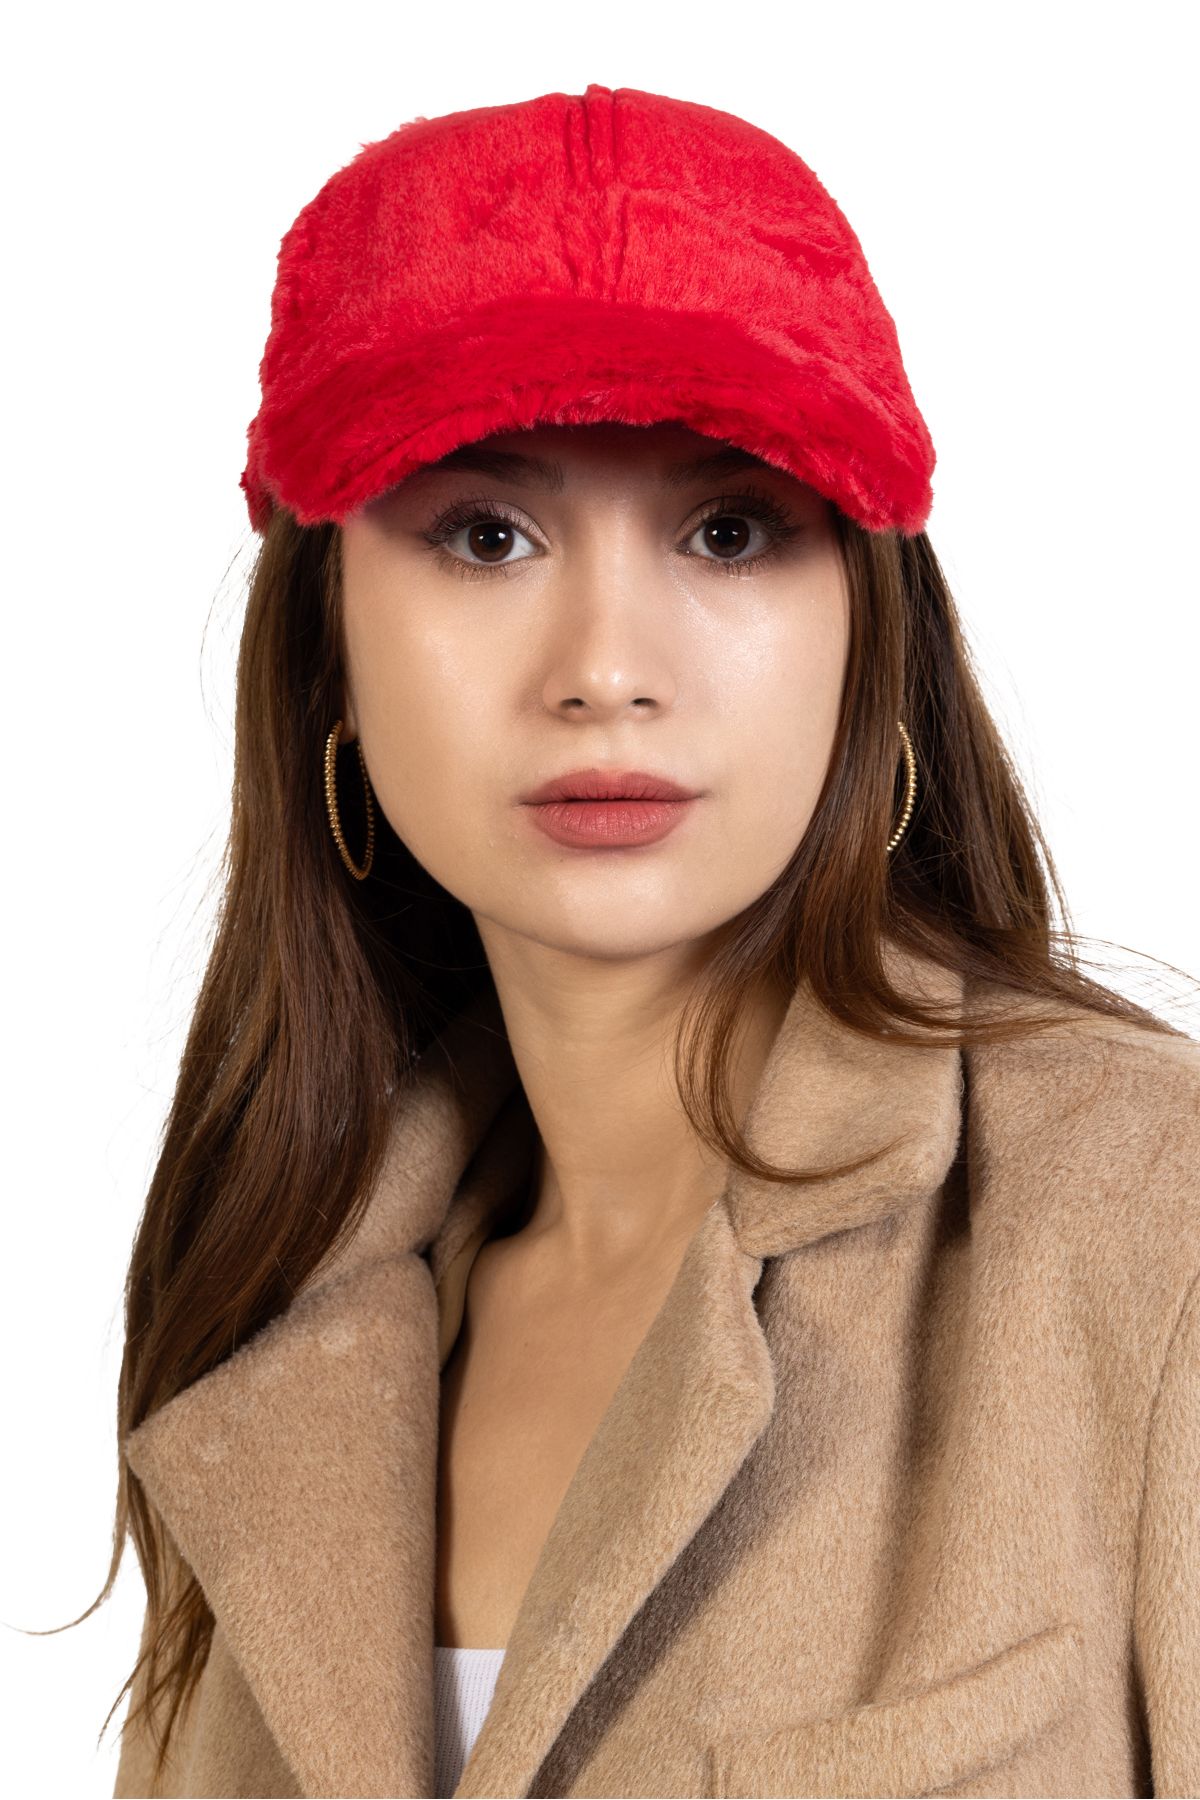 Yumuşak Tüylü Peluş Kışlık Kep Kadın Şapka Kırmızı